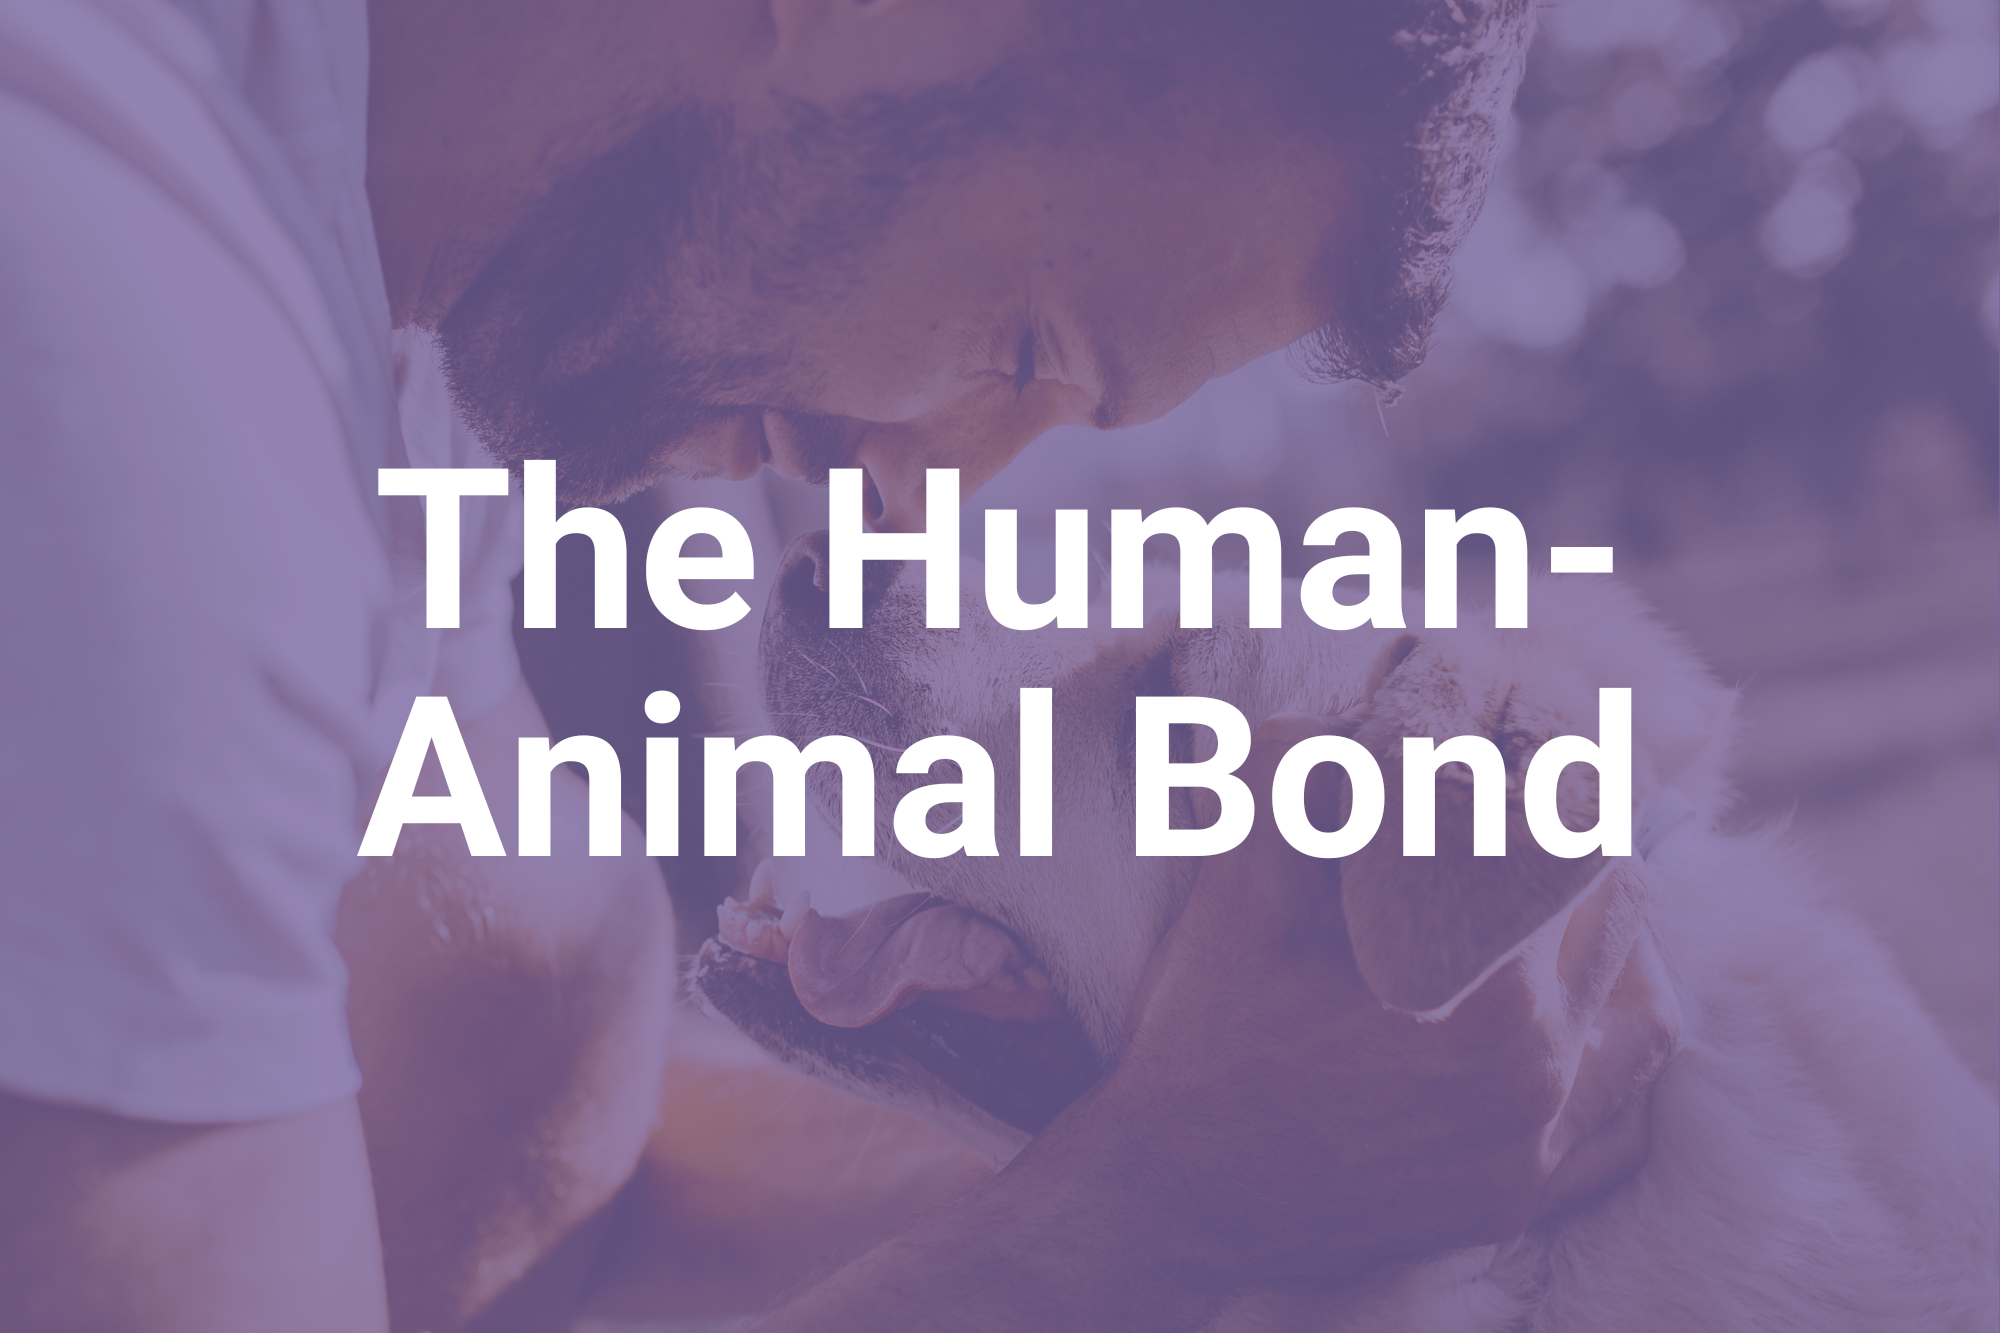 The Human-Animal Bond